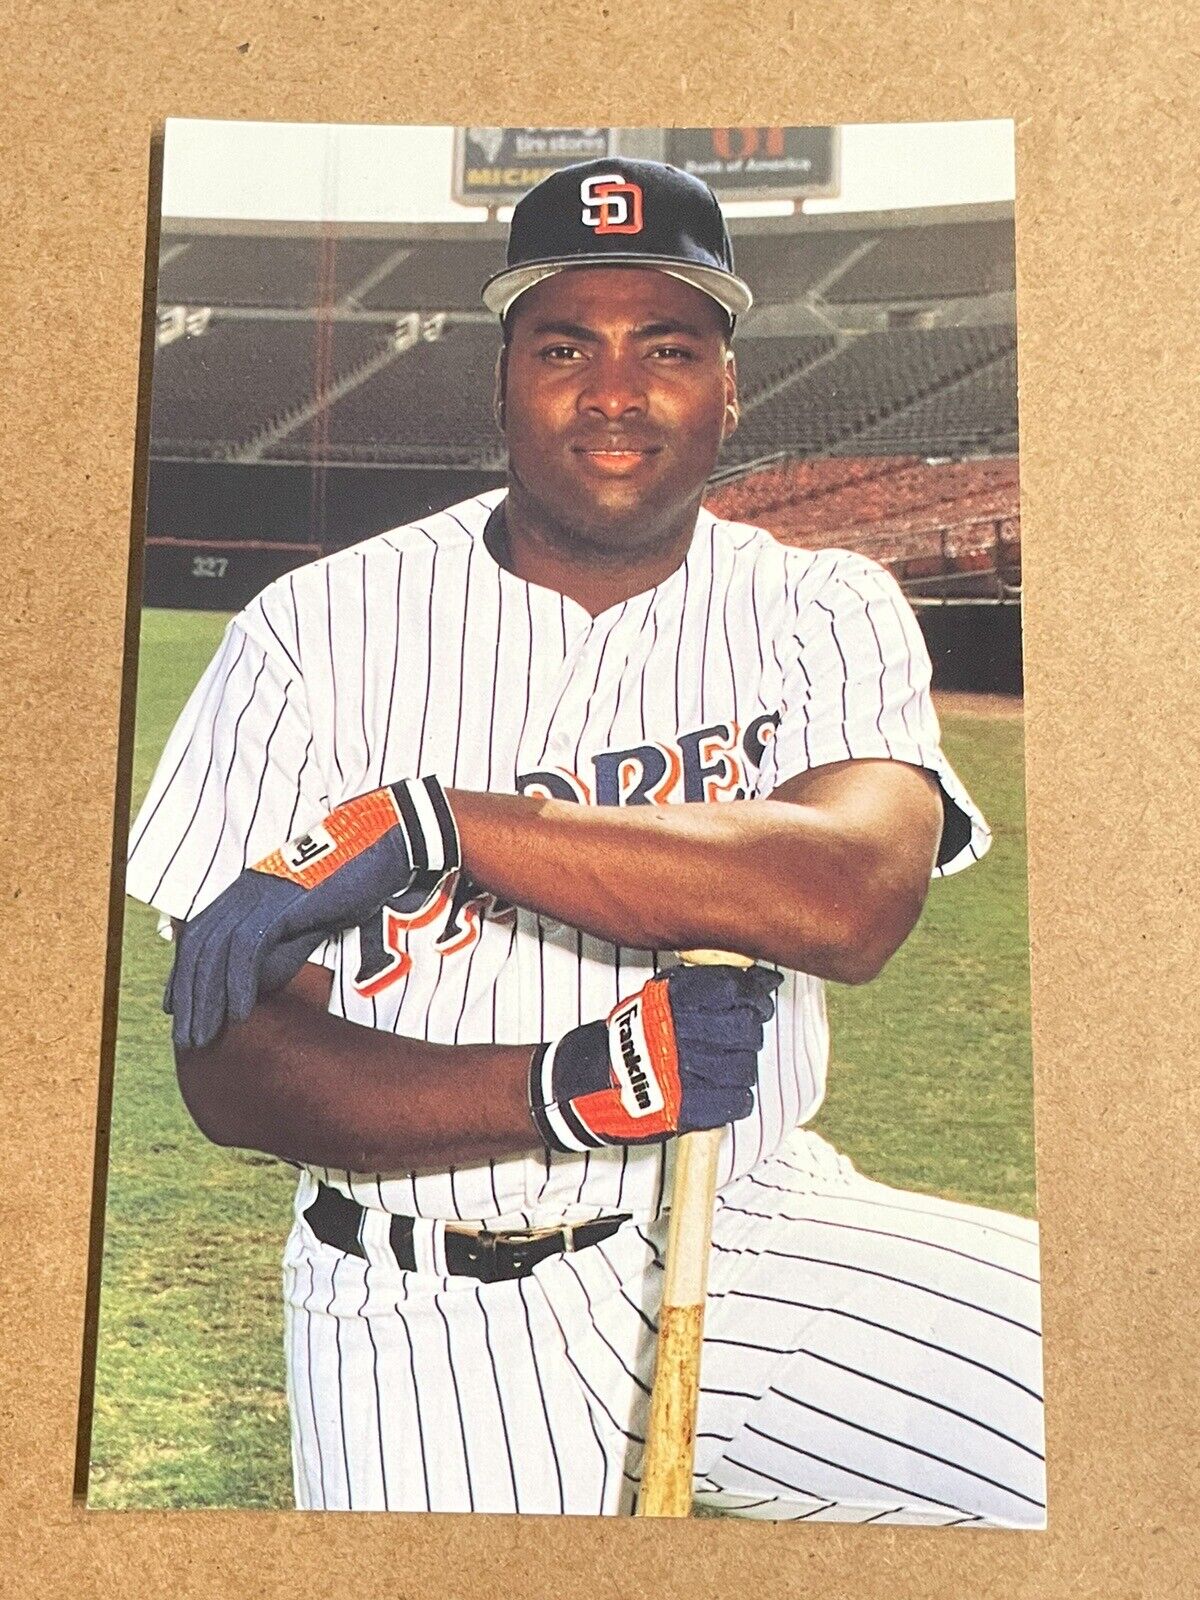 1992 Barry Colla Tony Gwynn Padres Postcard